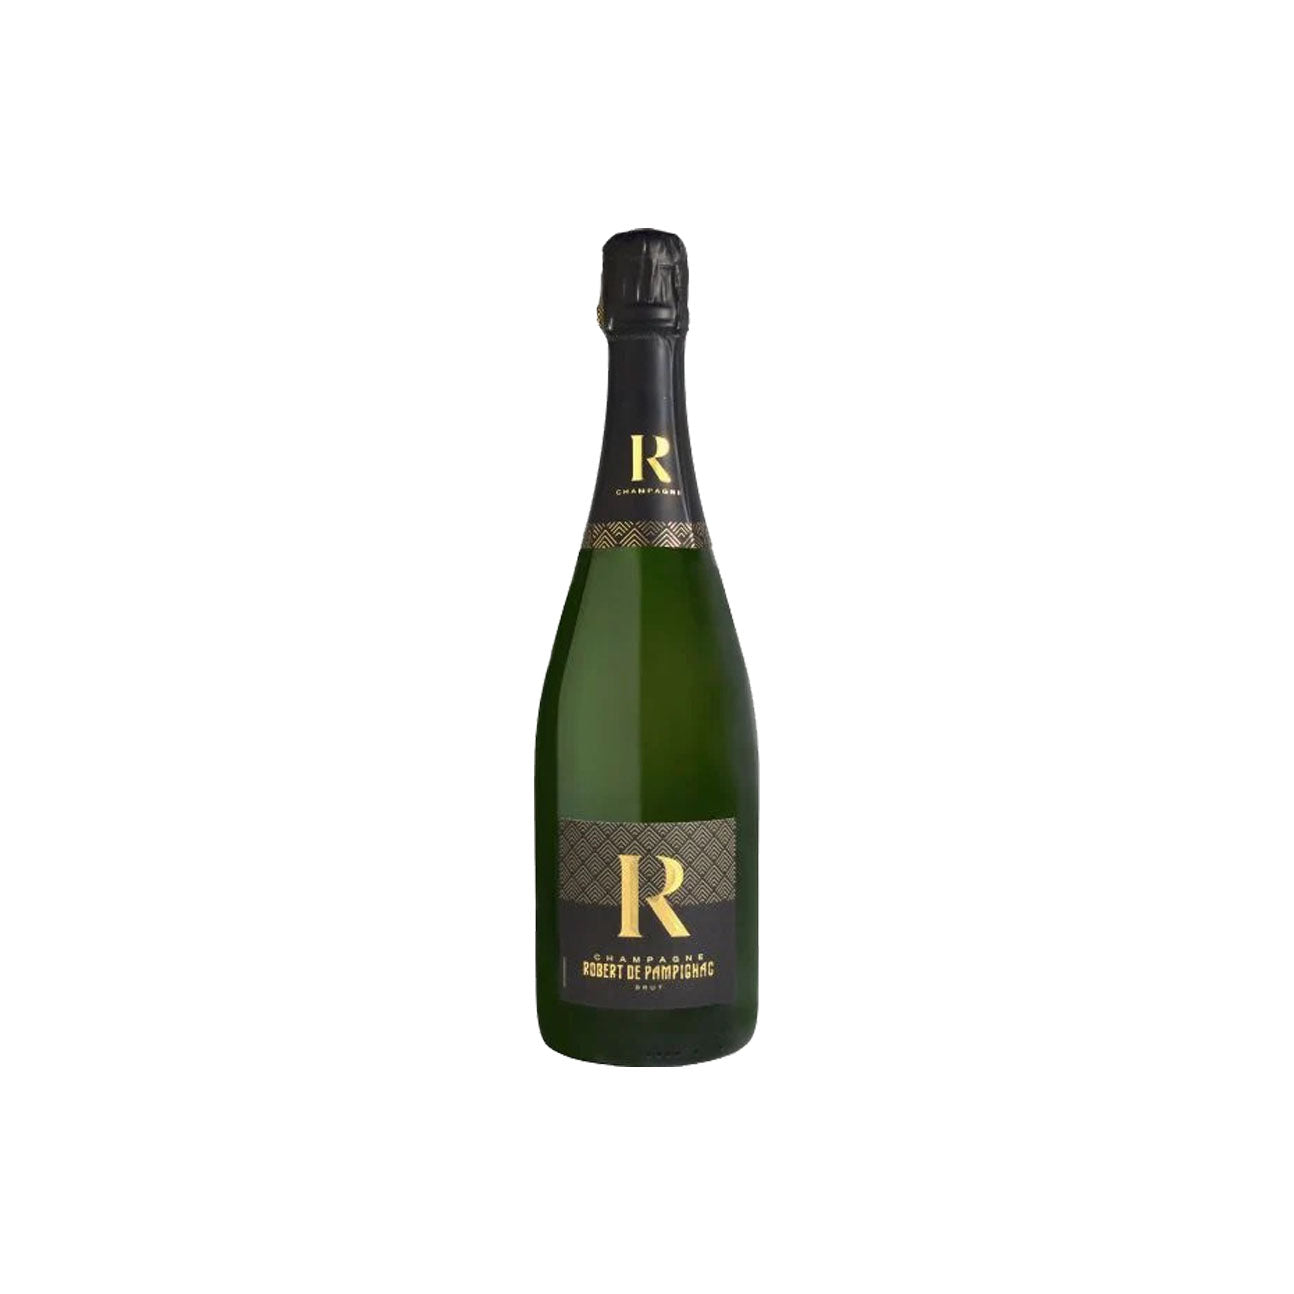 Robert de Pampignac Brut Champagne – Studio Beverage Direct